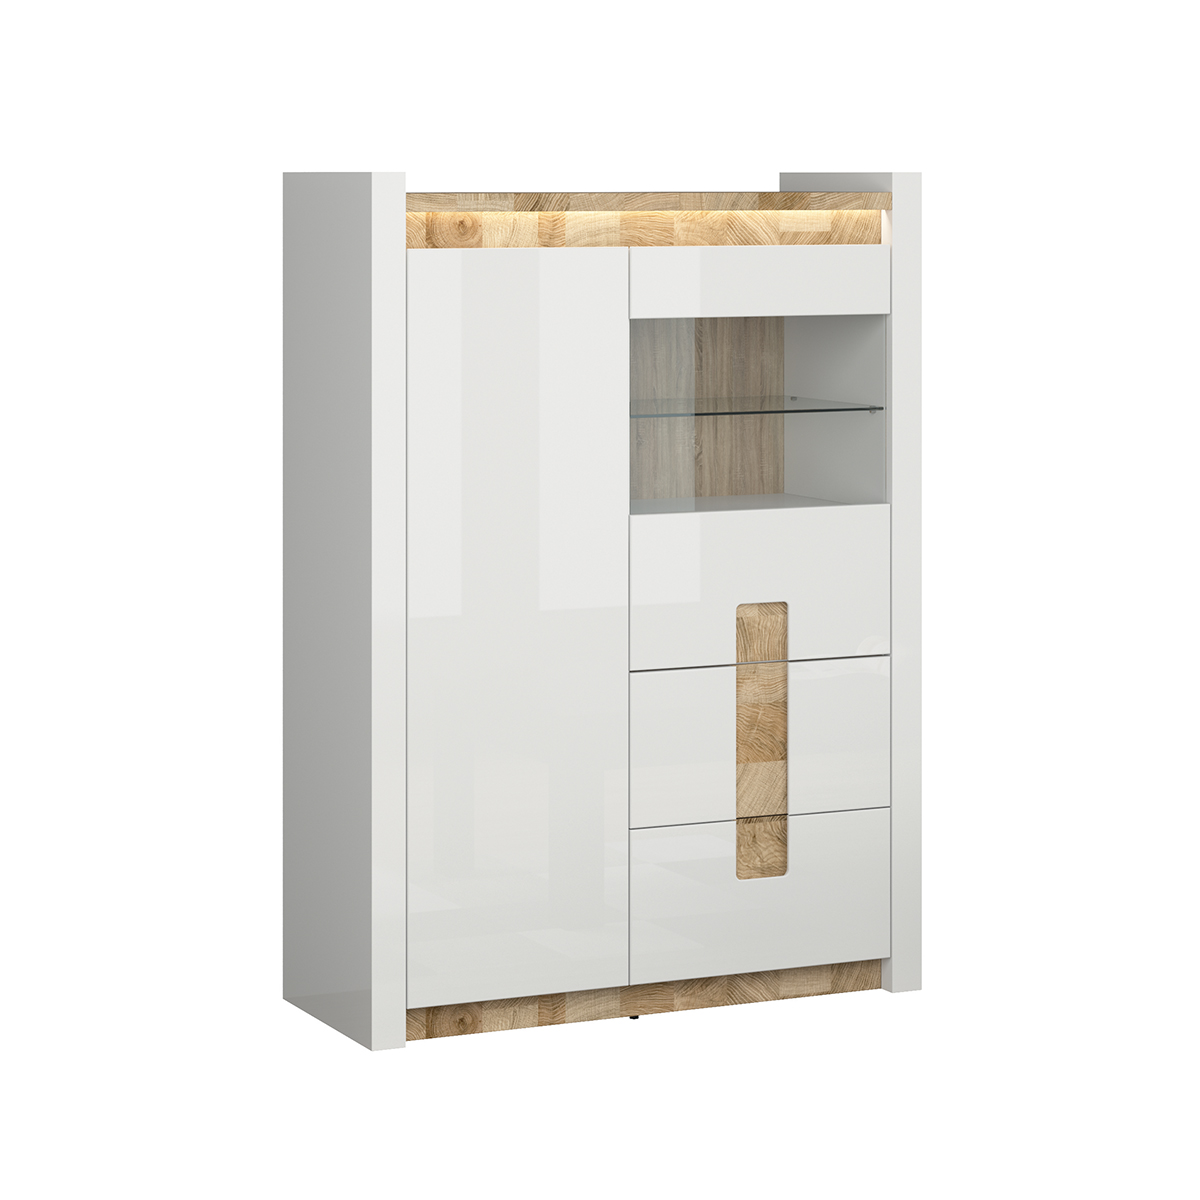 petits-meubles-S420-REG1W1D2S-BIP-DWM-BIP-helios-vaisselier-2-portes-blanc-bois-2